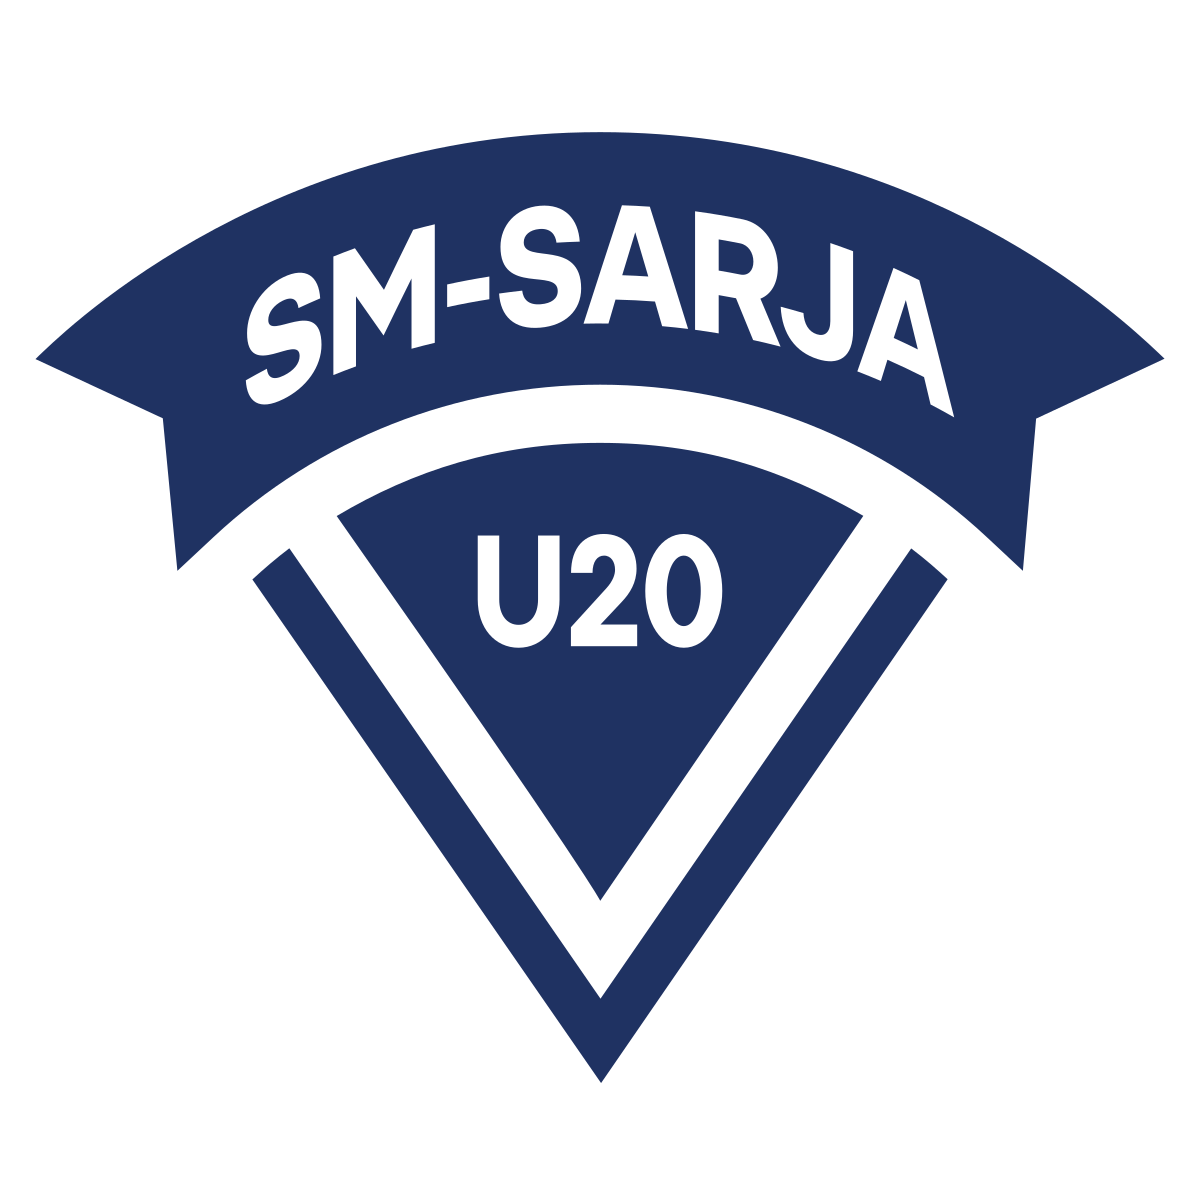 Jääkiekon U20 SM-sarja – Wikipedia